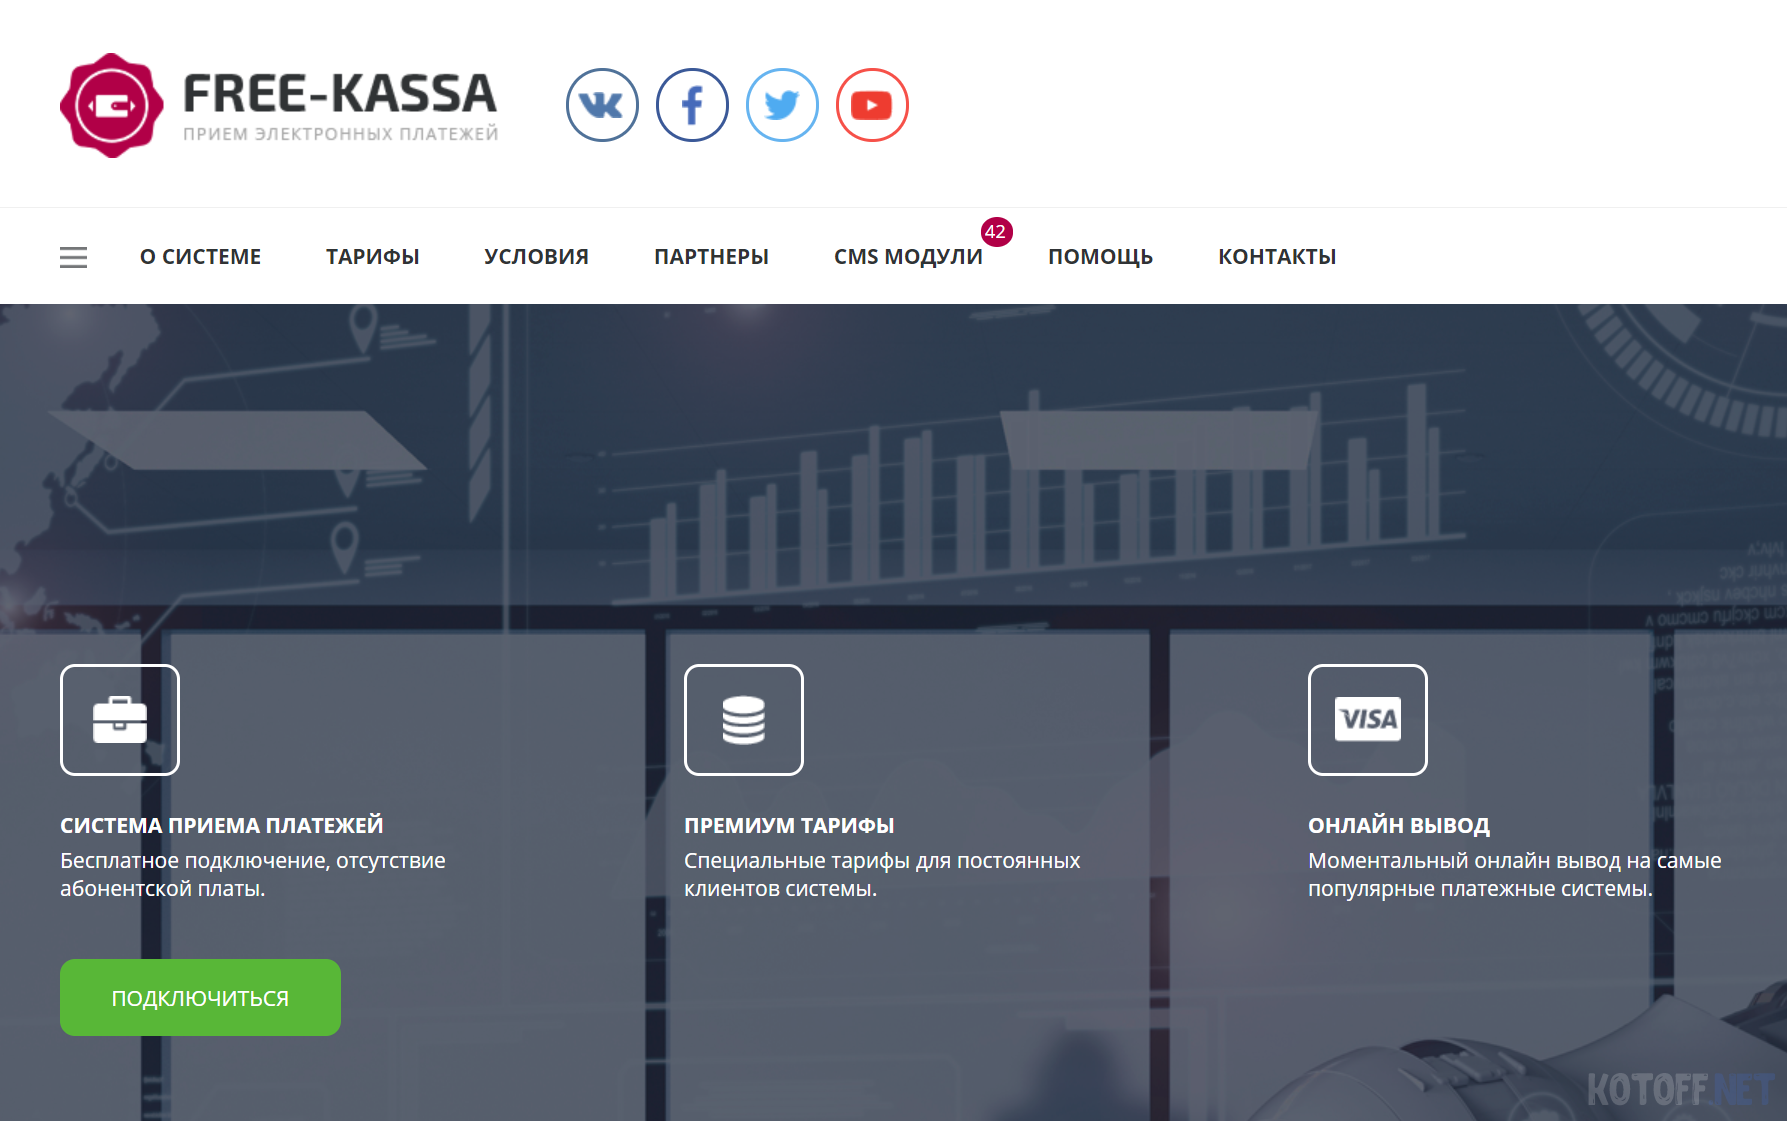 Готовый обработчик платежей FREE-KASSA для ботов ВК и сайтов